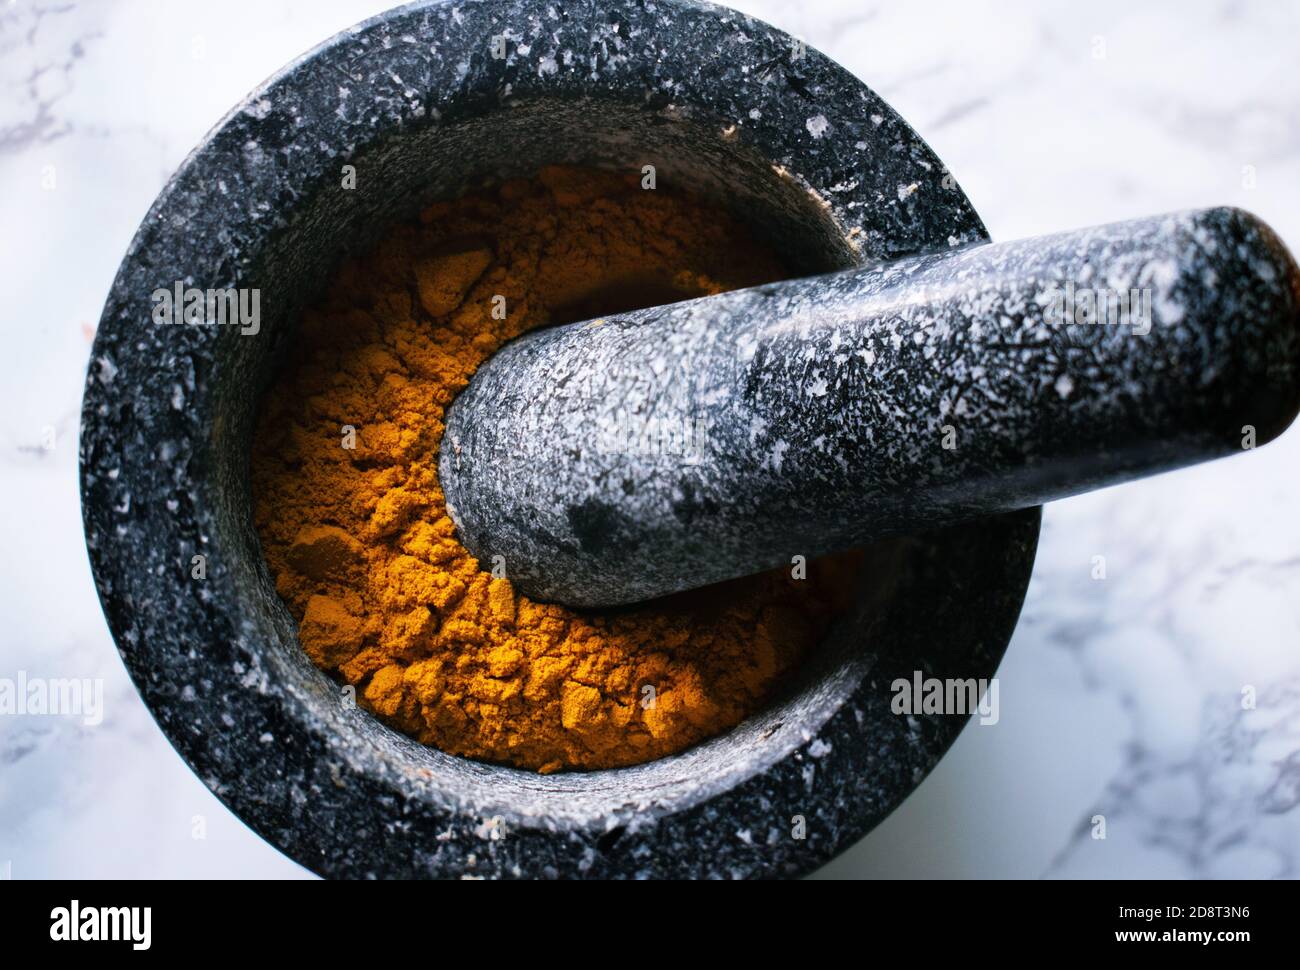 Vivid orange from Turmeric spice in dark stone mortar and pestle Stock Photo